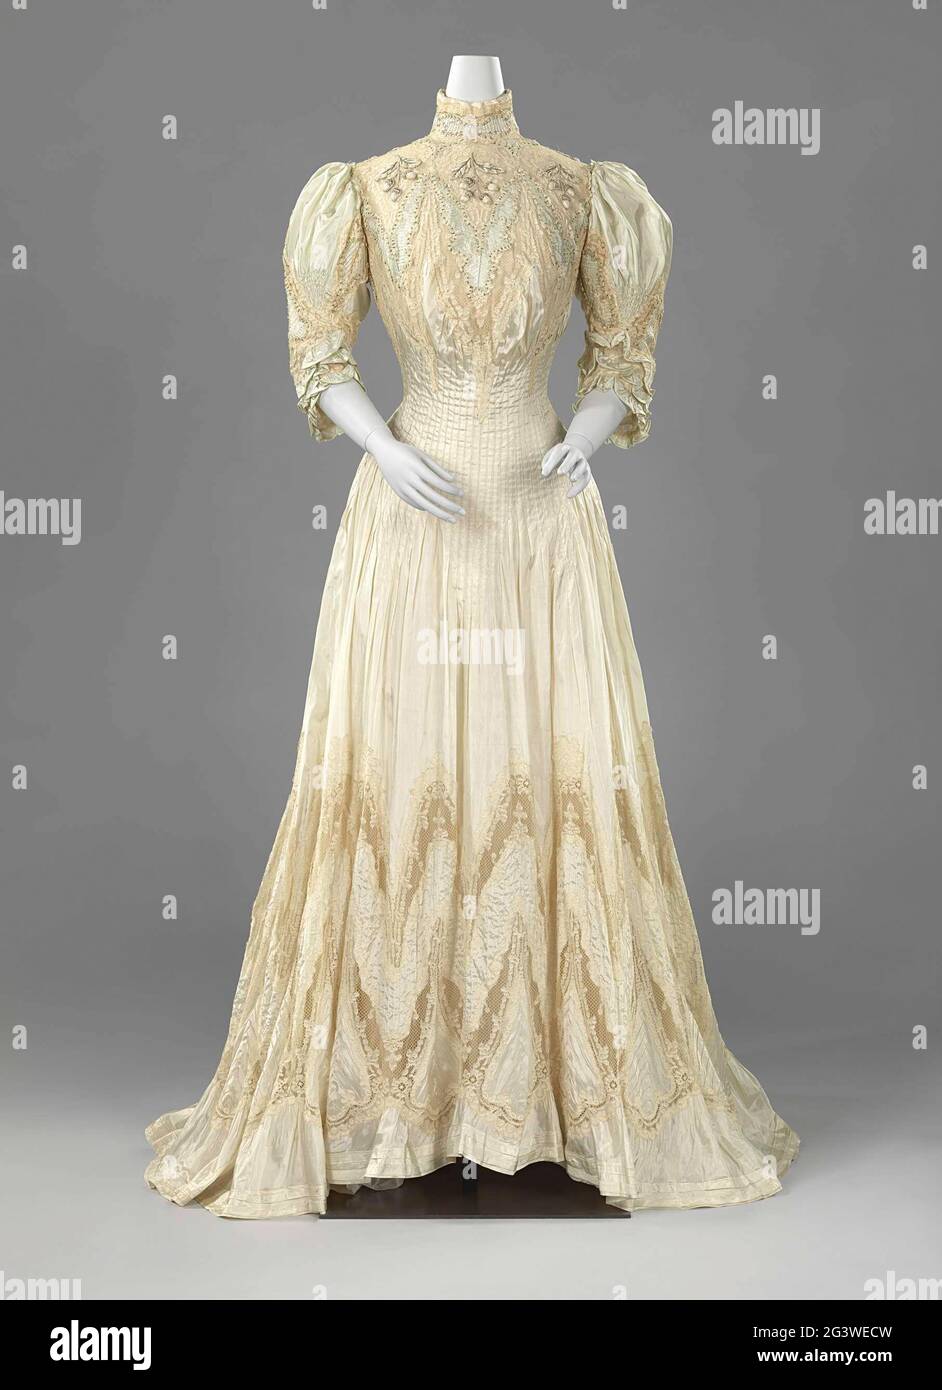 Teagown. A partir de 1900, les femmes portaient une robe moins formelle à la  maison, également appelée robe de soirée. Le modèle exposé ici est appelé  robe princesse et suit les courbes